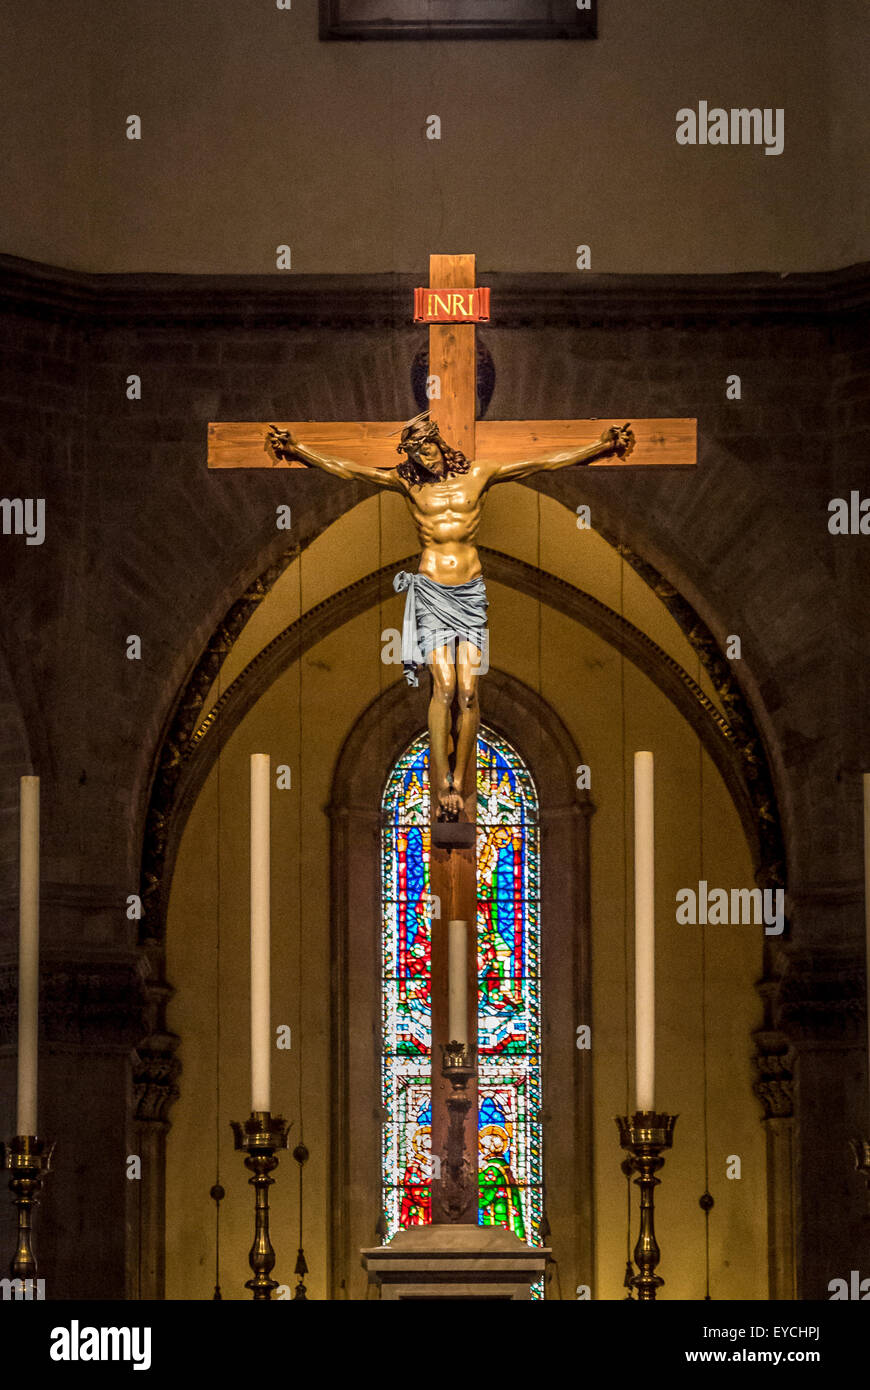 Altar und Kruzifix in der Kathedrale von Florenz. Florenz, Italien. Stockfoto